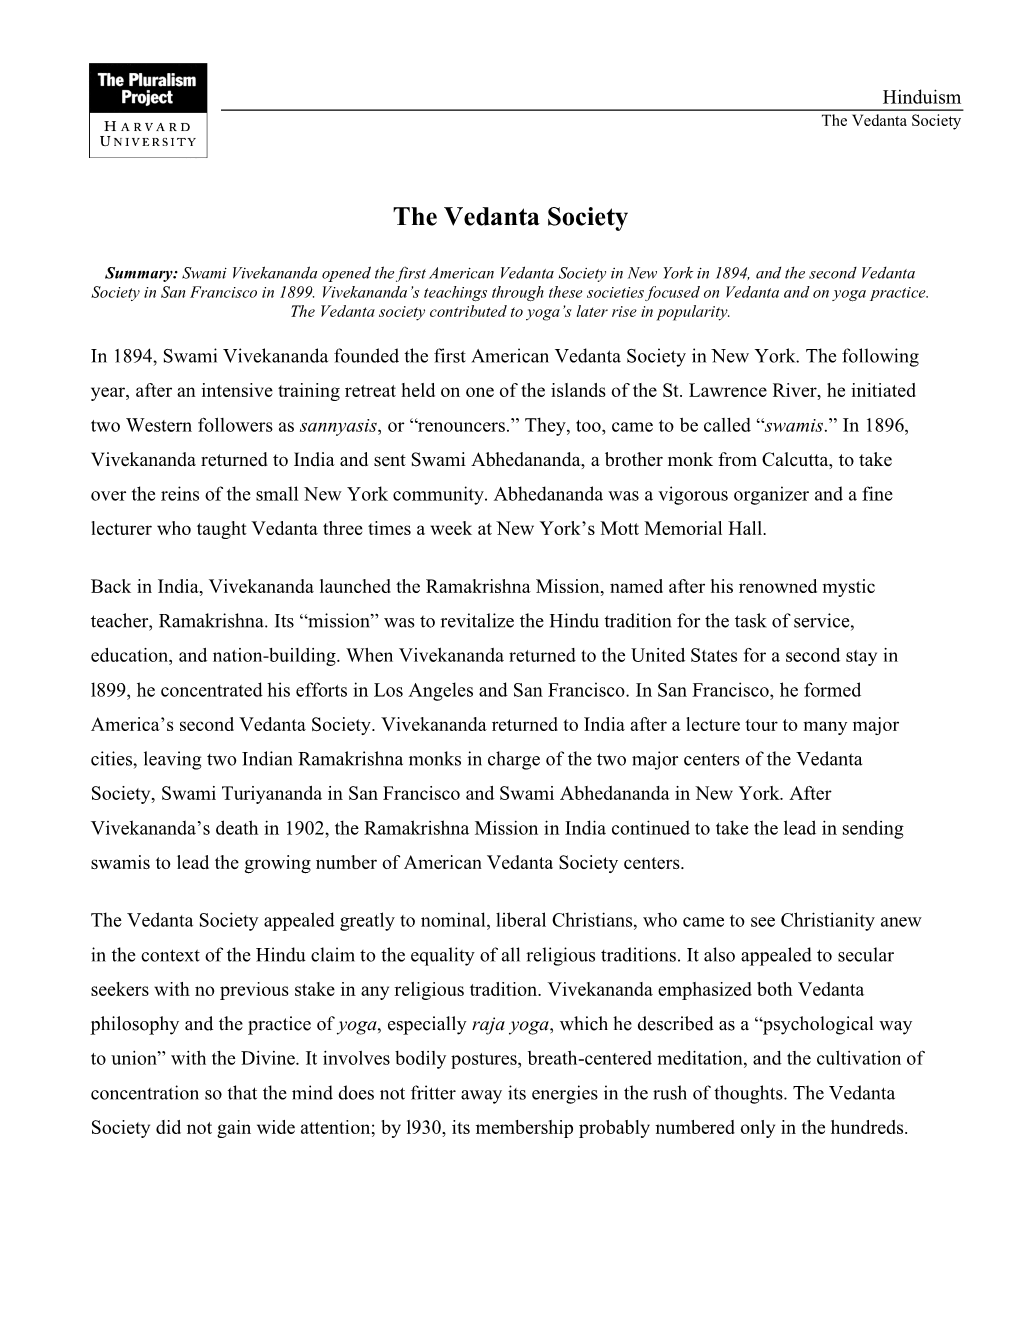 The Vedanta Society